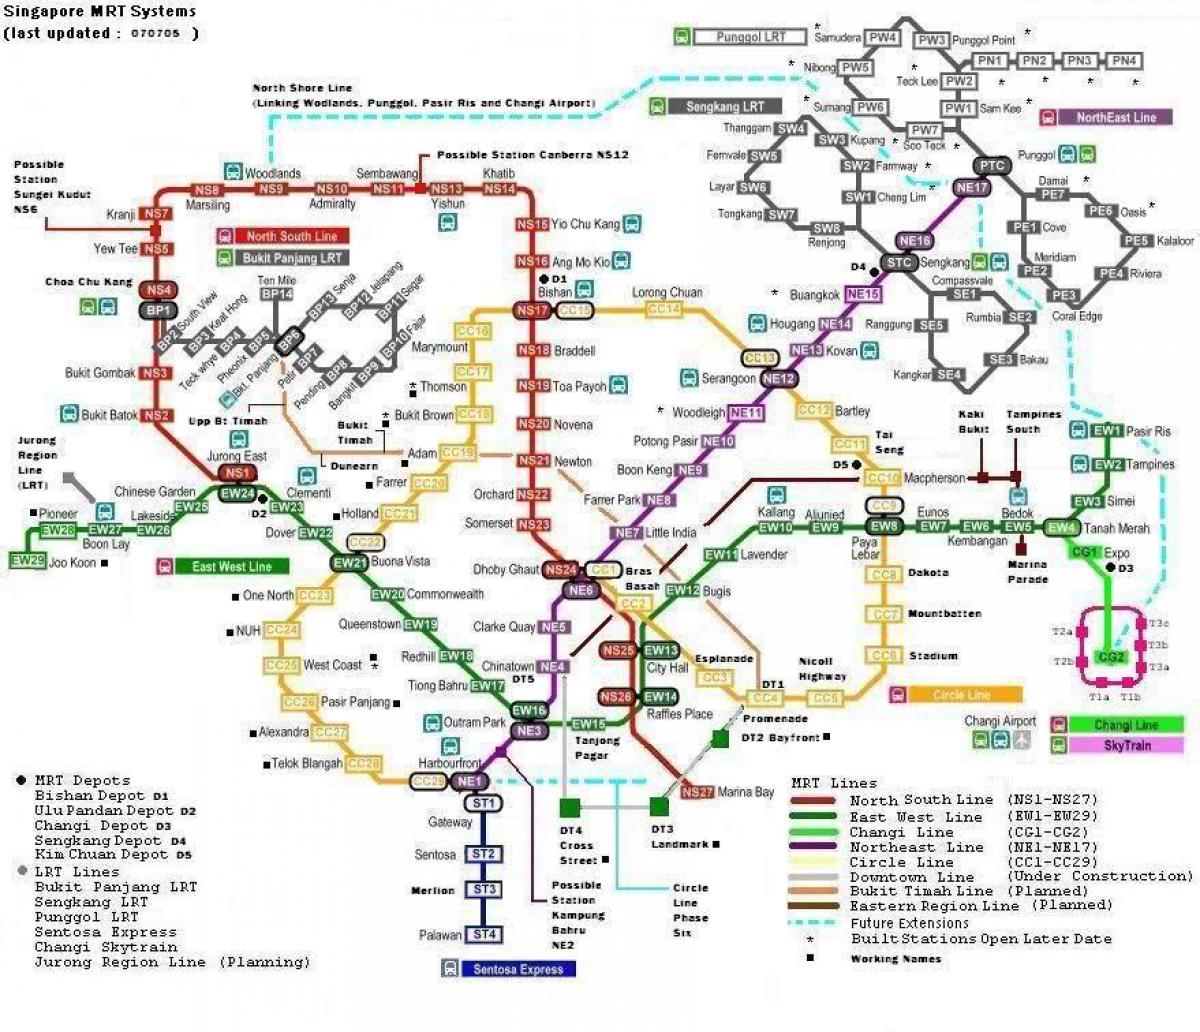 एमआरटी 7 स्टेशनों के मानचित्र